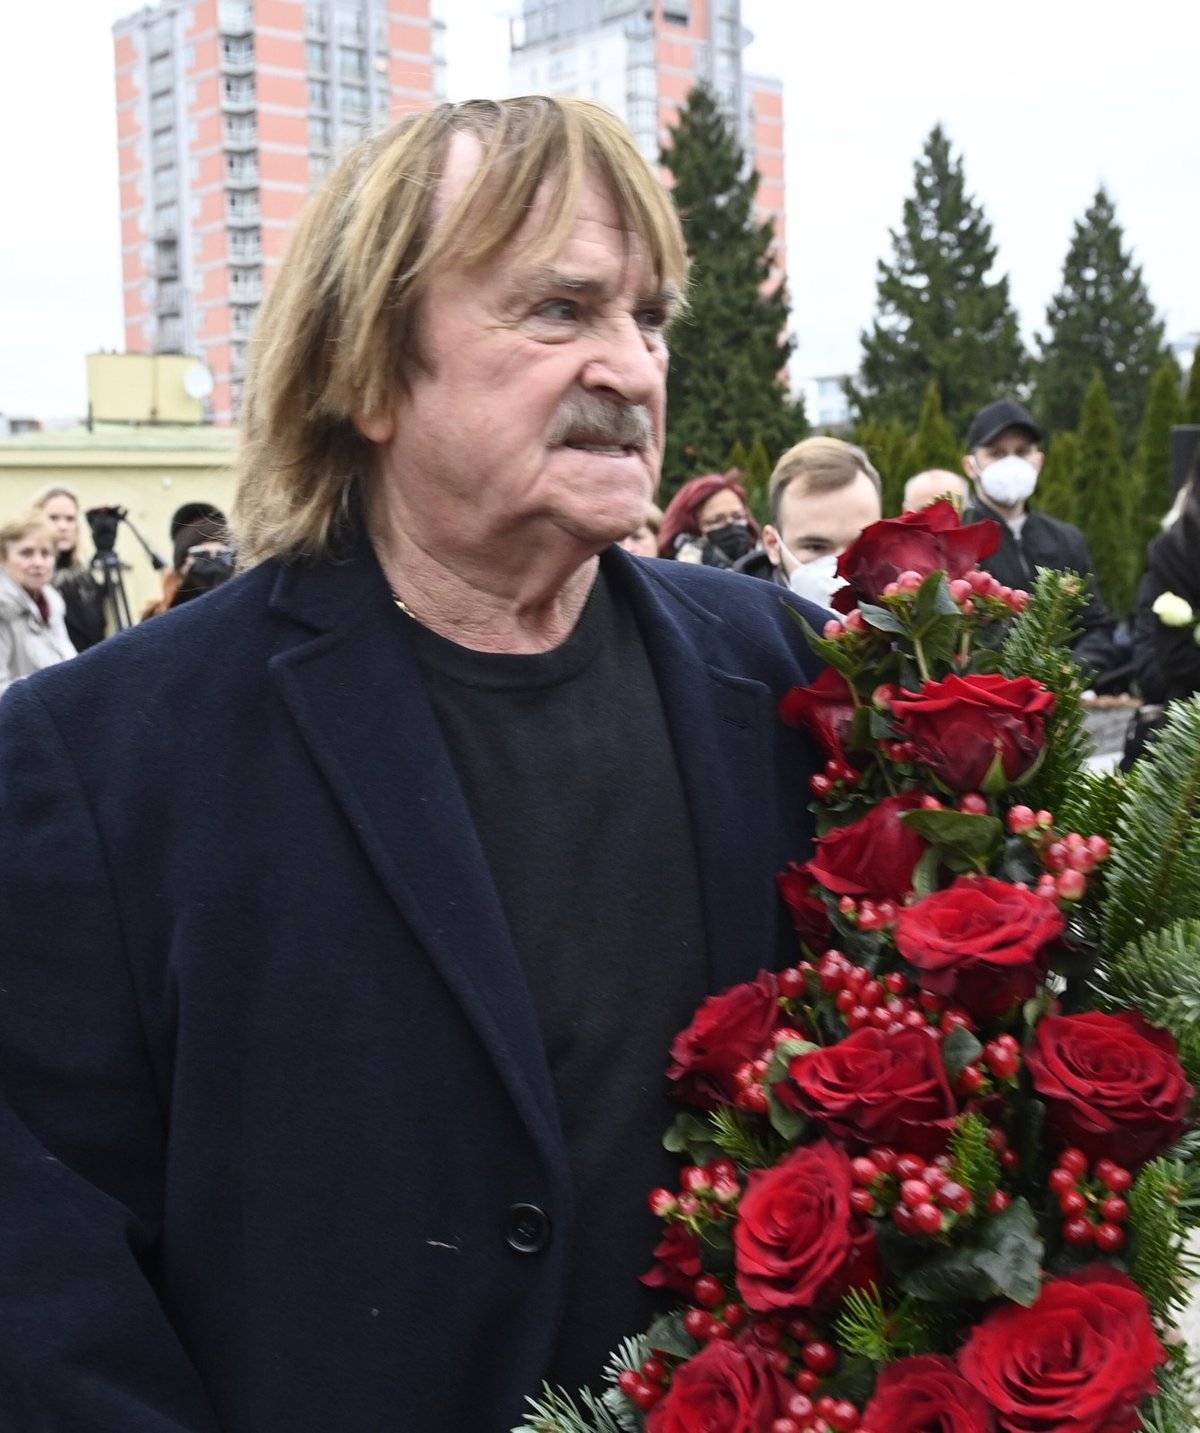 Hudebník Karel Vágner přichází na poslední rozloučení se zpěvákem a skladatelem Miroslavem Žbirkou, 19. listopadu 2021 ve strašnickém krematoriu v Praze. 